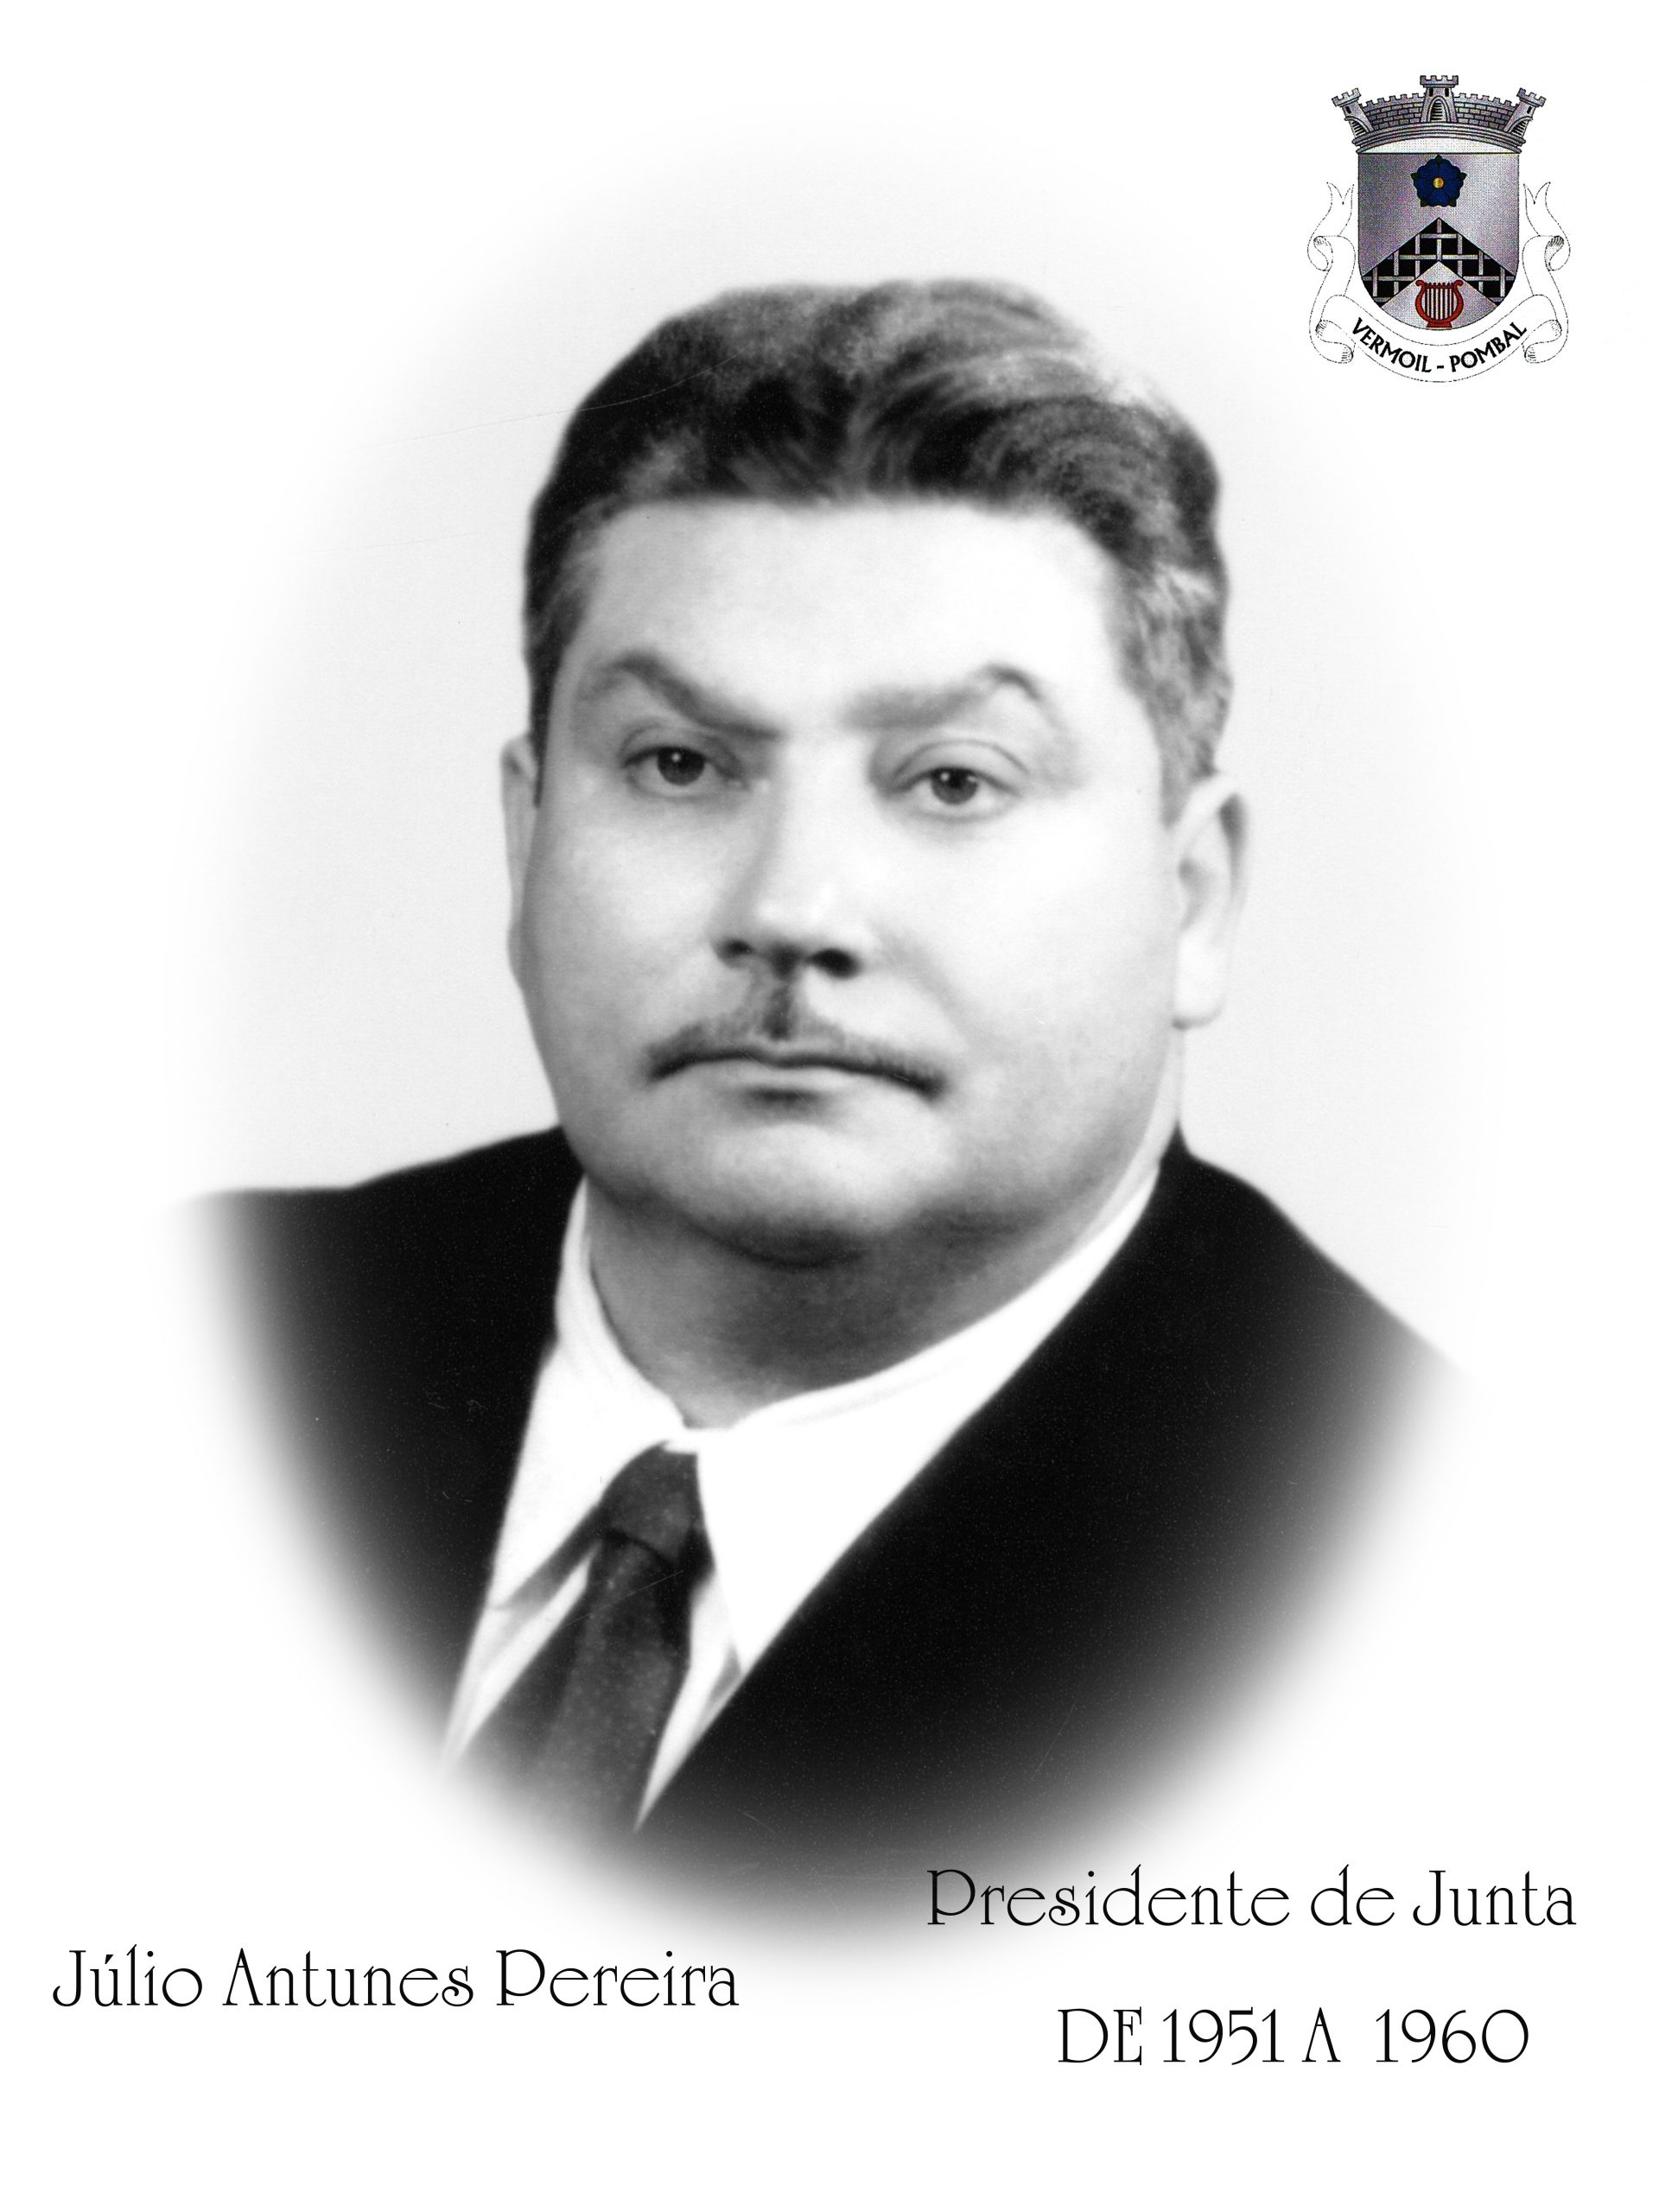 Júlio Antunes Pereira - Mandato de 1951 a 1960